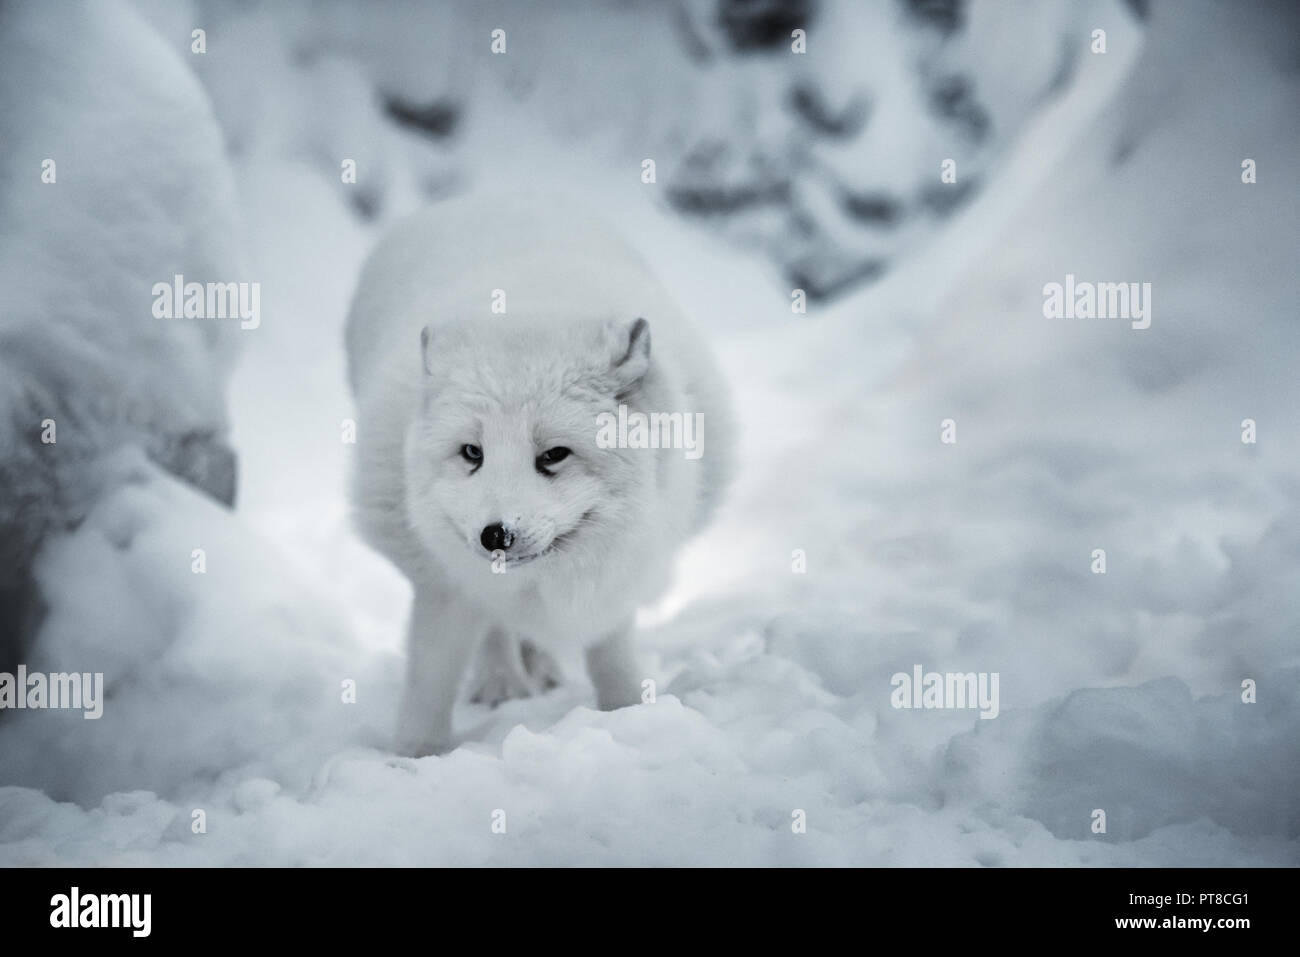 Winterlandschaft mit weißen polar Fuchs oder alopex lagopus in seinem natürlichen Lebensraum auf echtem Schnee Hintergrund. Tier sucht direkt in die Kamera. Wählen Sie Stockfoto